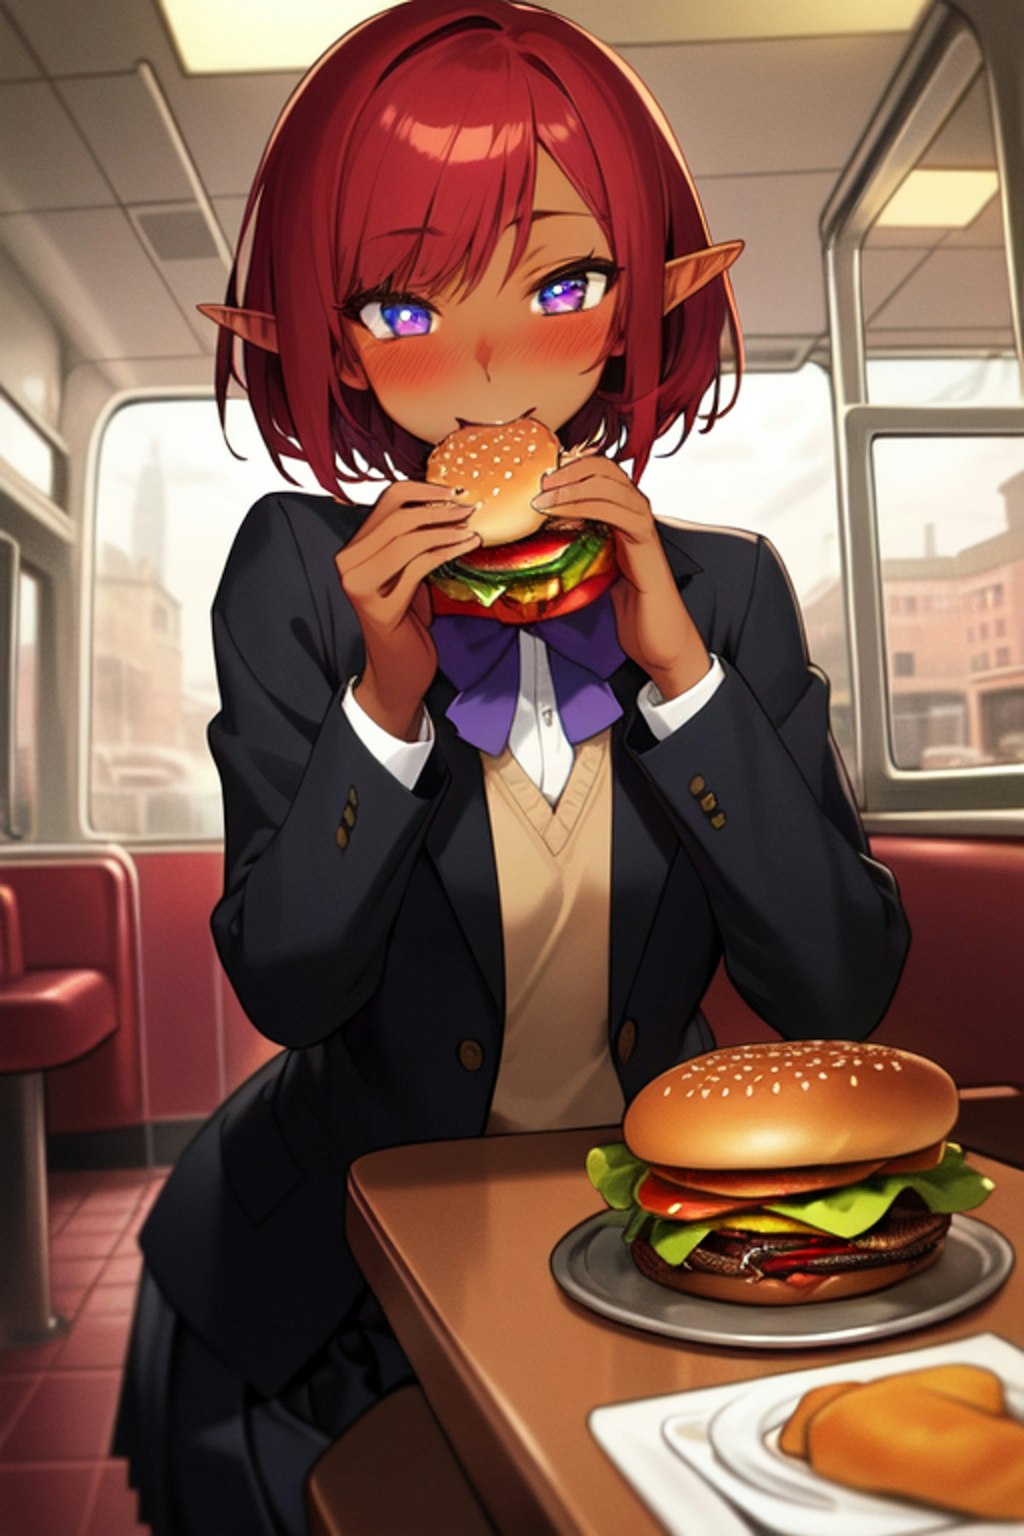 ハンバーガー、大好き I love hamburgers!